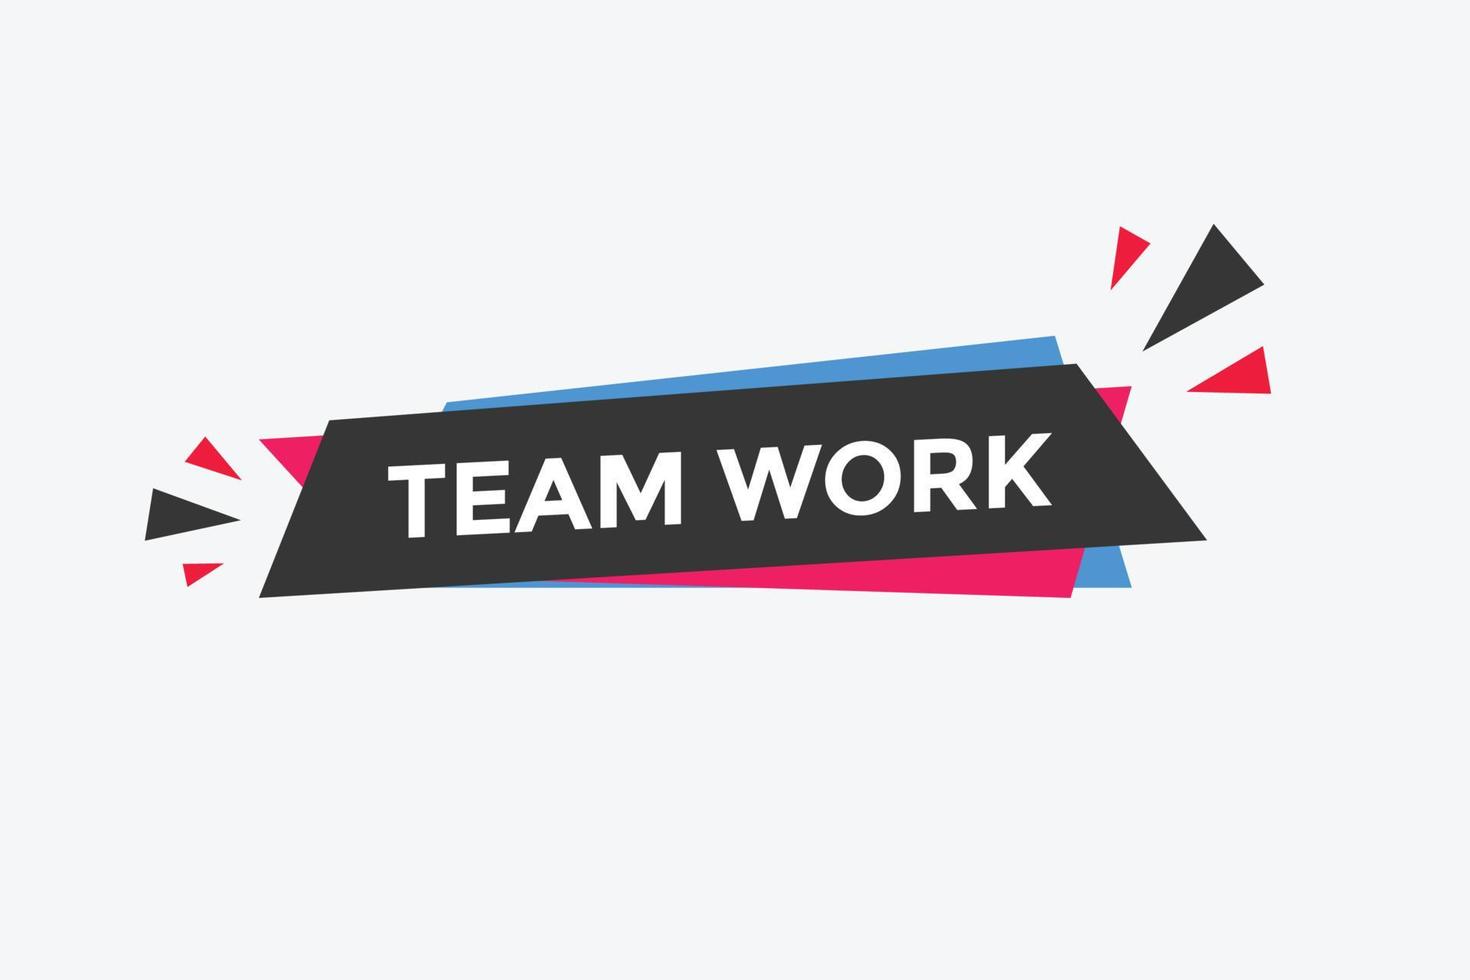 team werk tekst knop. toespraak bubbel. team werk kleurrijk web spandoek. vector illustratie